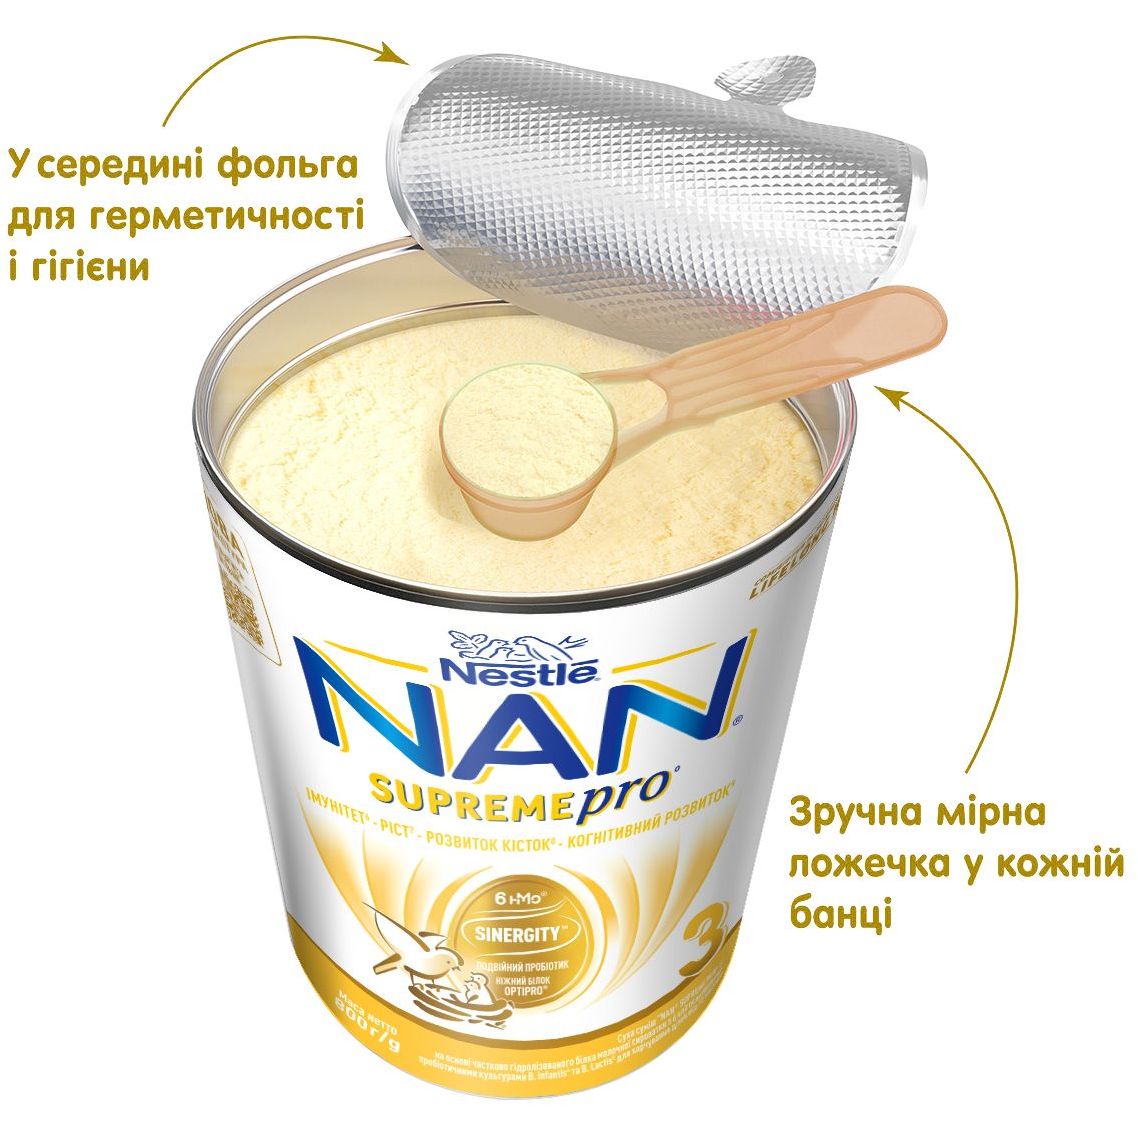 Сухая смесь NAN 3 Supreme Pro с 6 олигосахаридами и двойным пробиотиком для питания детей от 12 месяцев 800 г - фото 7